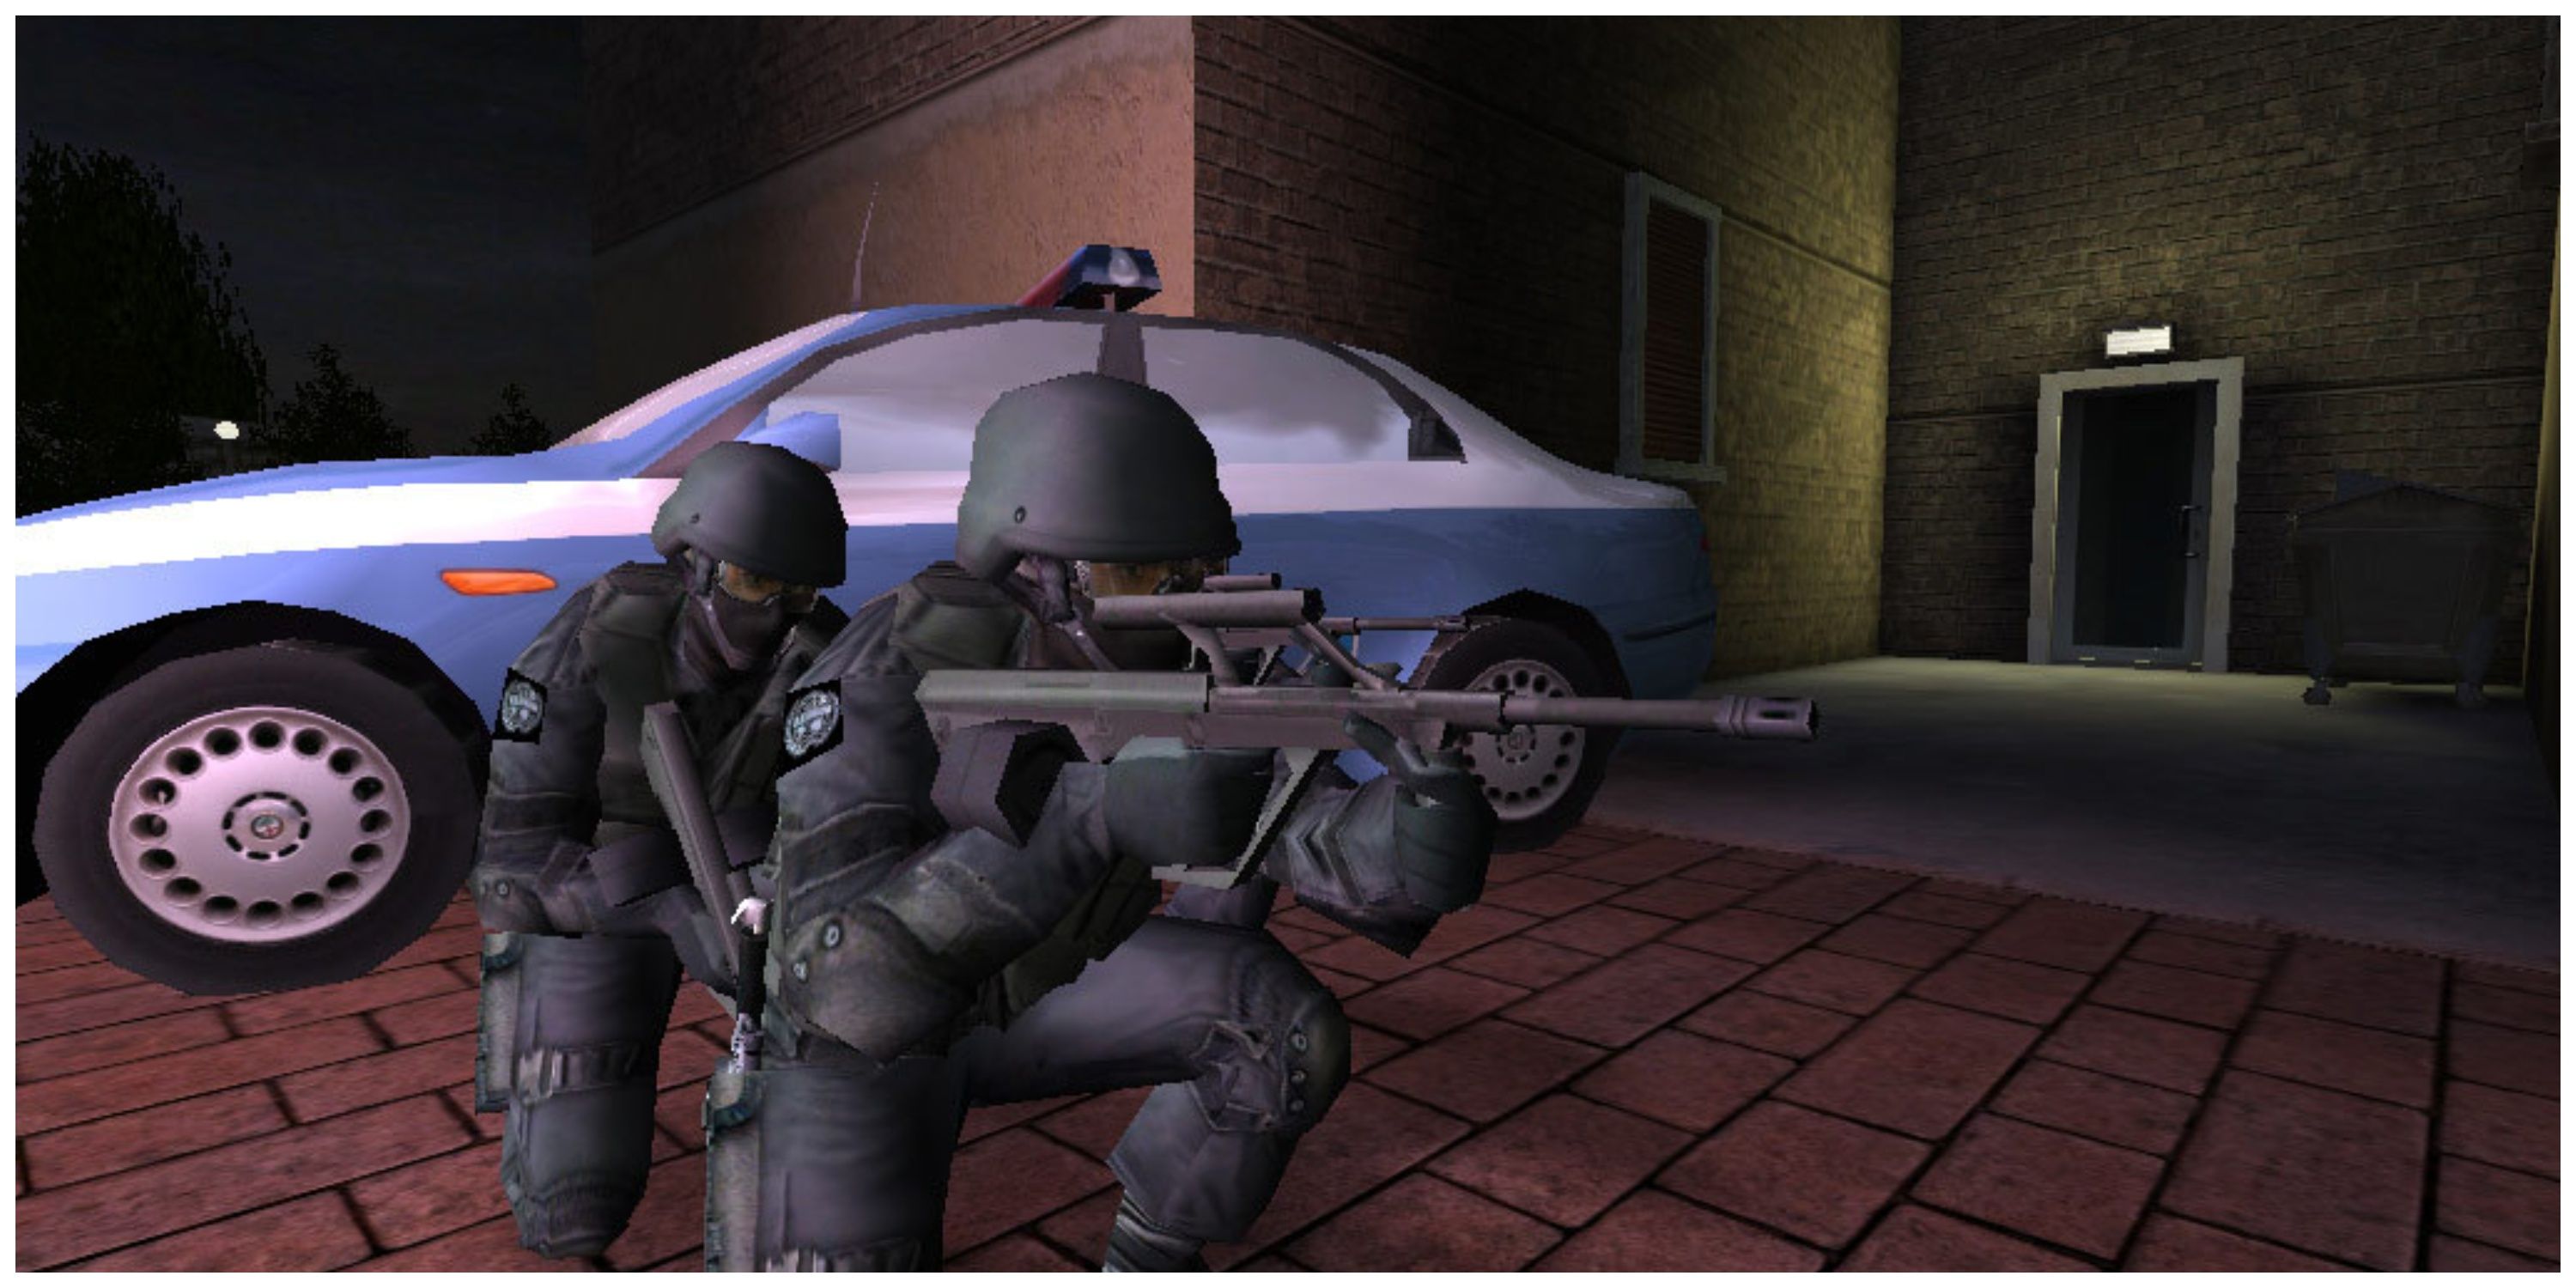 Rainbow Six 3: Raven Shield - 2 officiers accroupis à l'extérieur